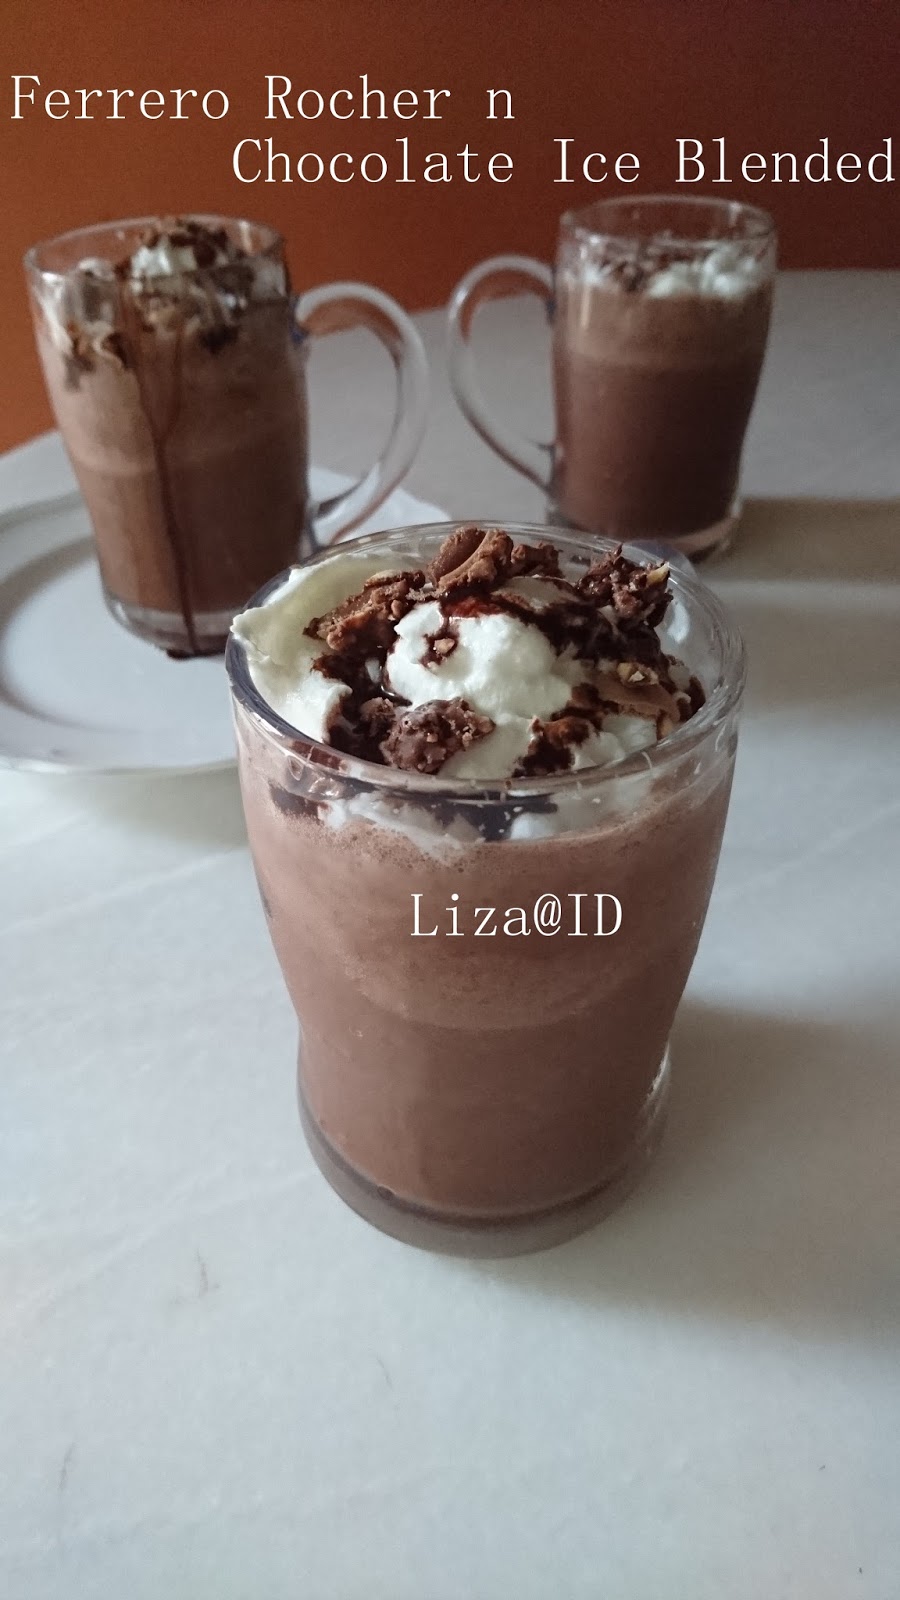 INTAI DAPUR: Ferrero Rocher n Chocolate Ice Blended